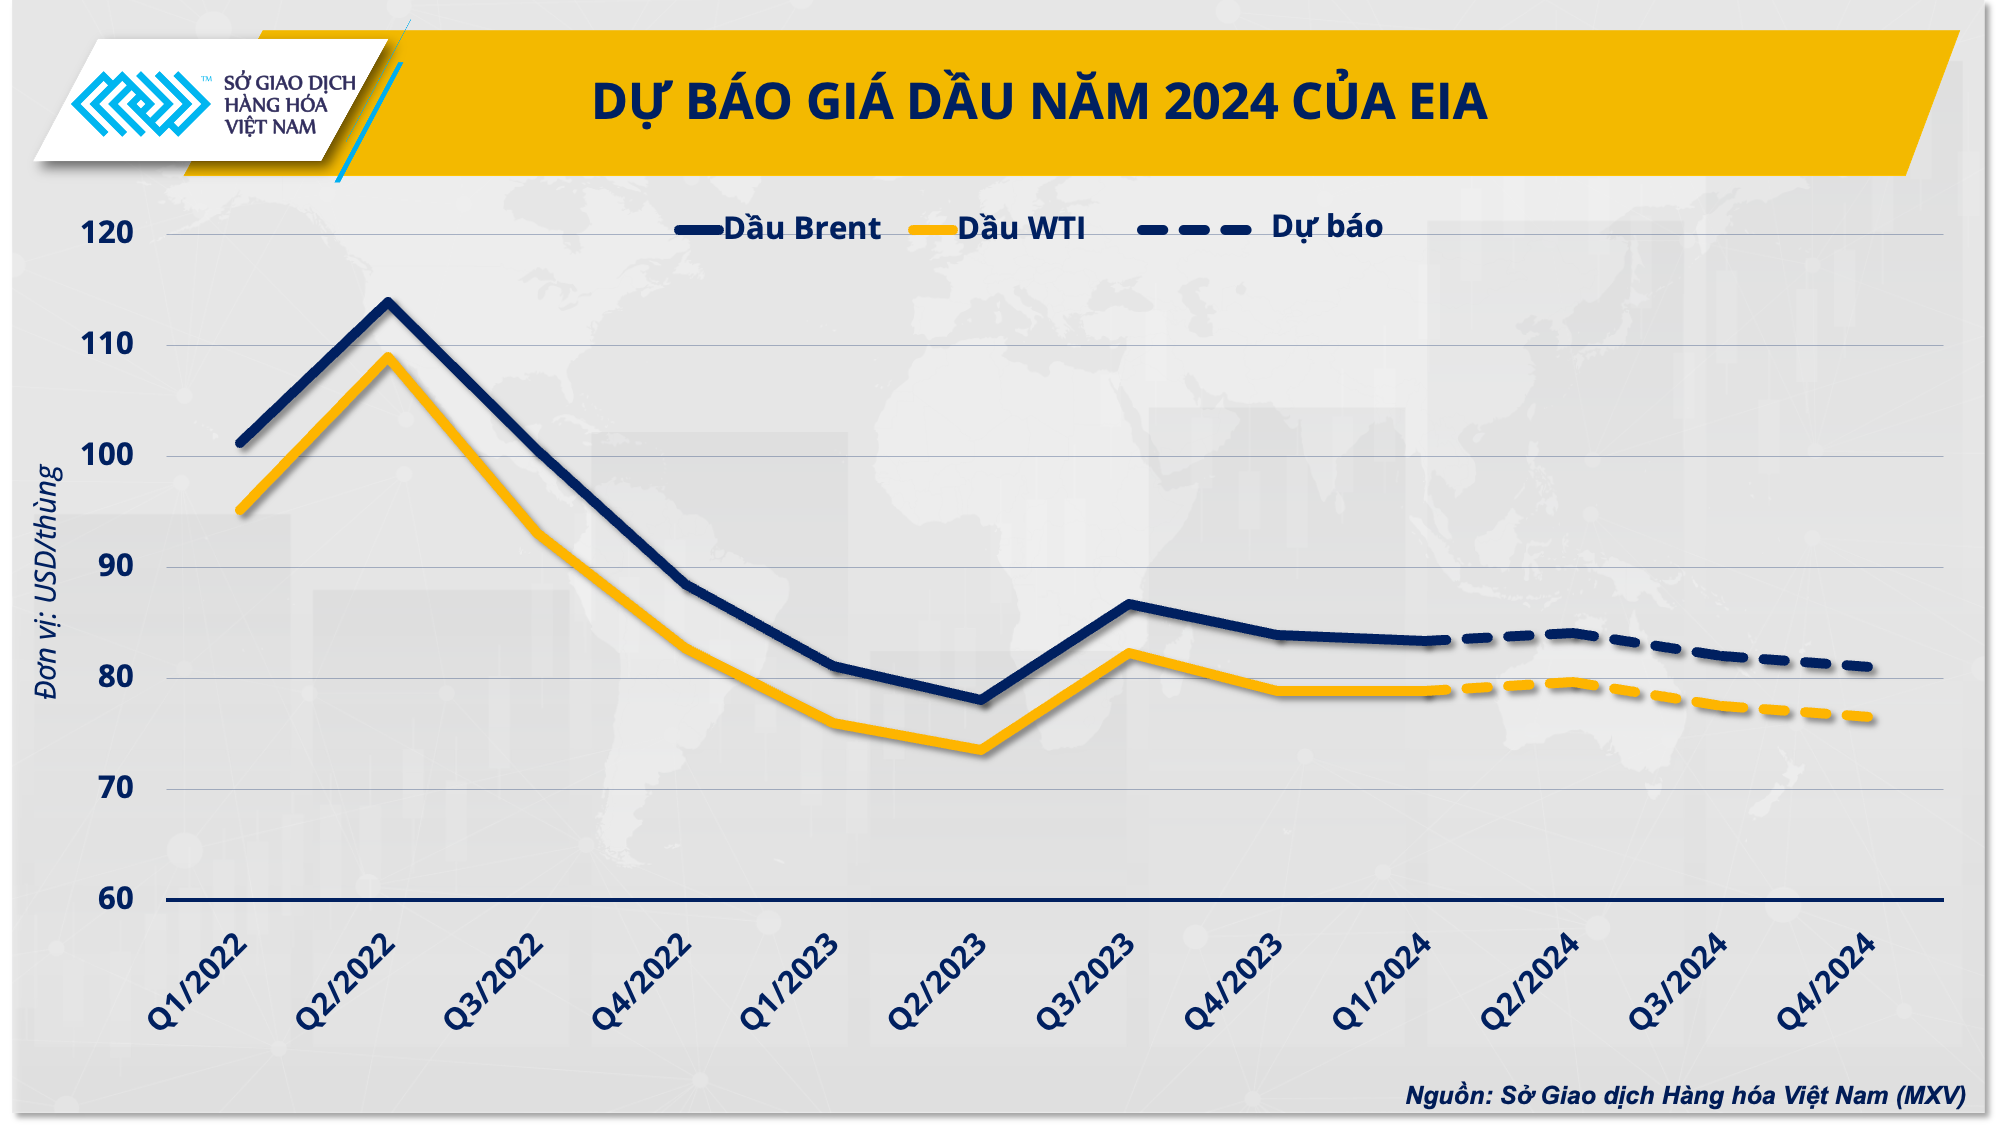 Dự báo giá dầu năm 2024 của EIA